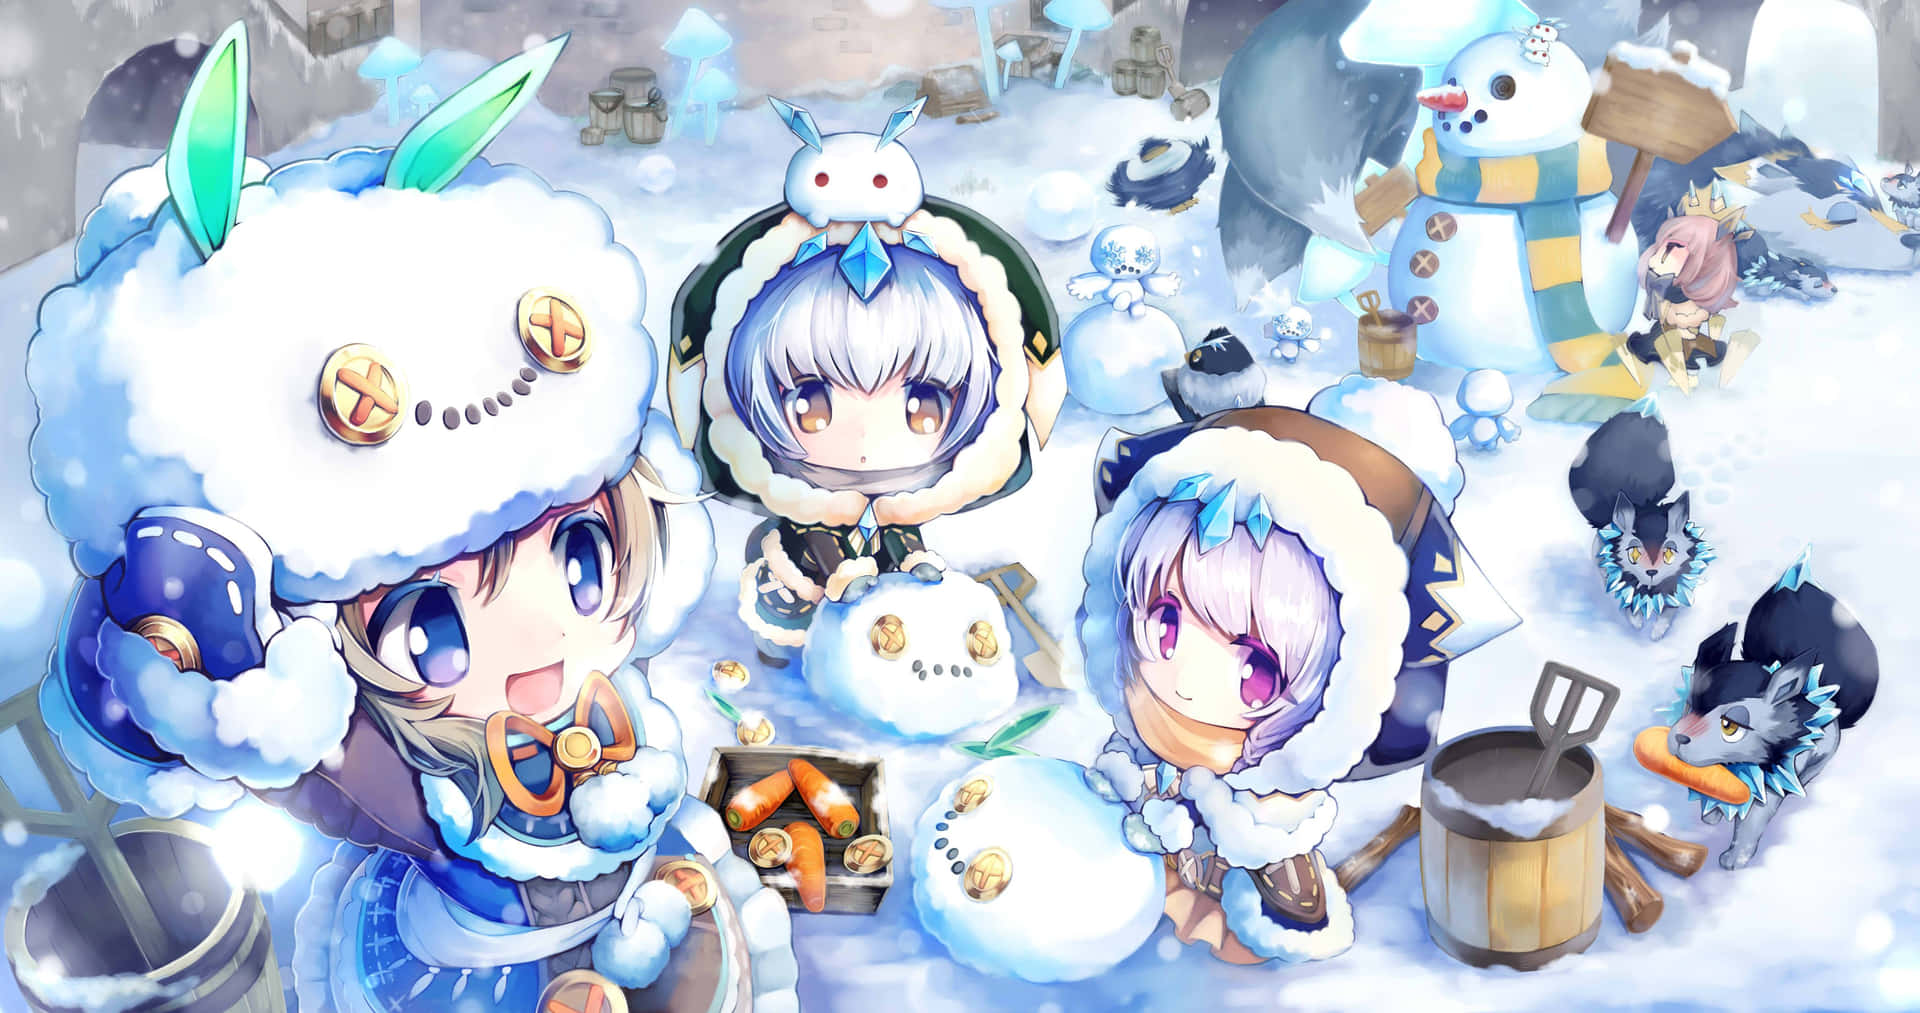 Einegruppe Von Anime-charakteren Im Schnee.